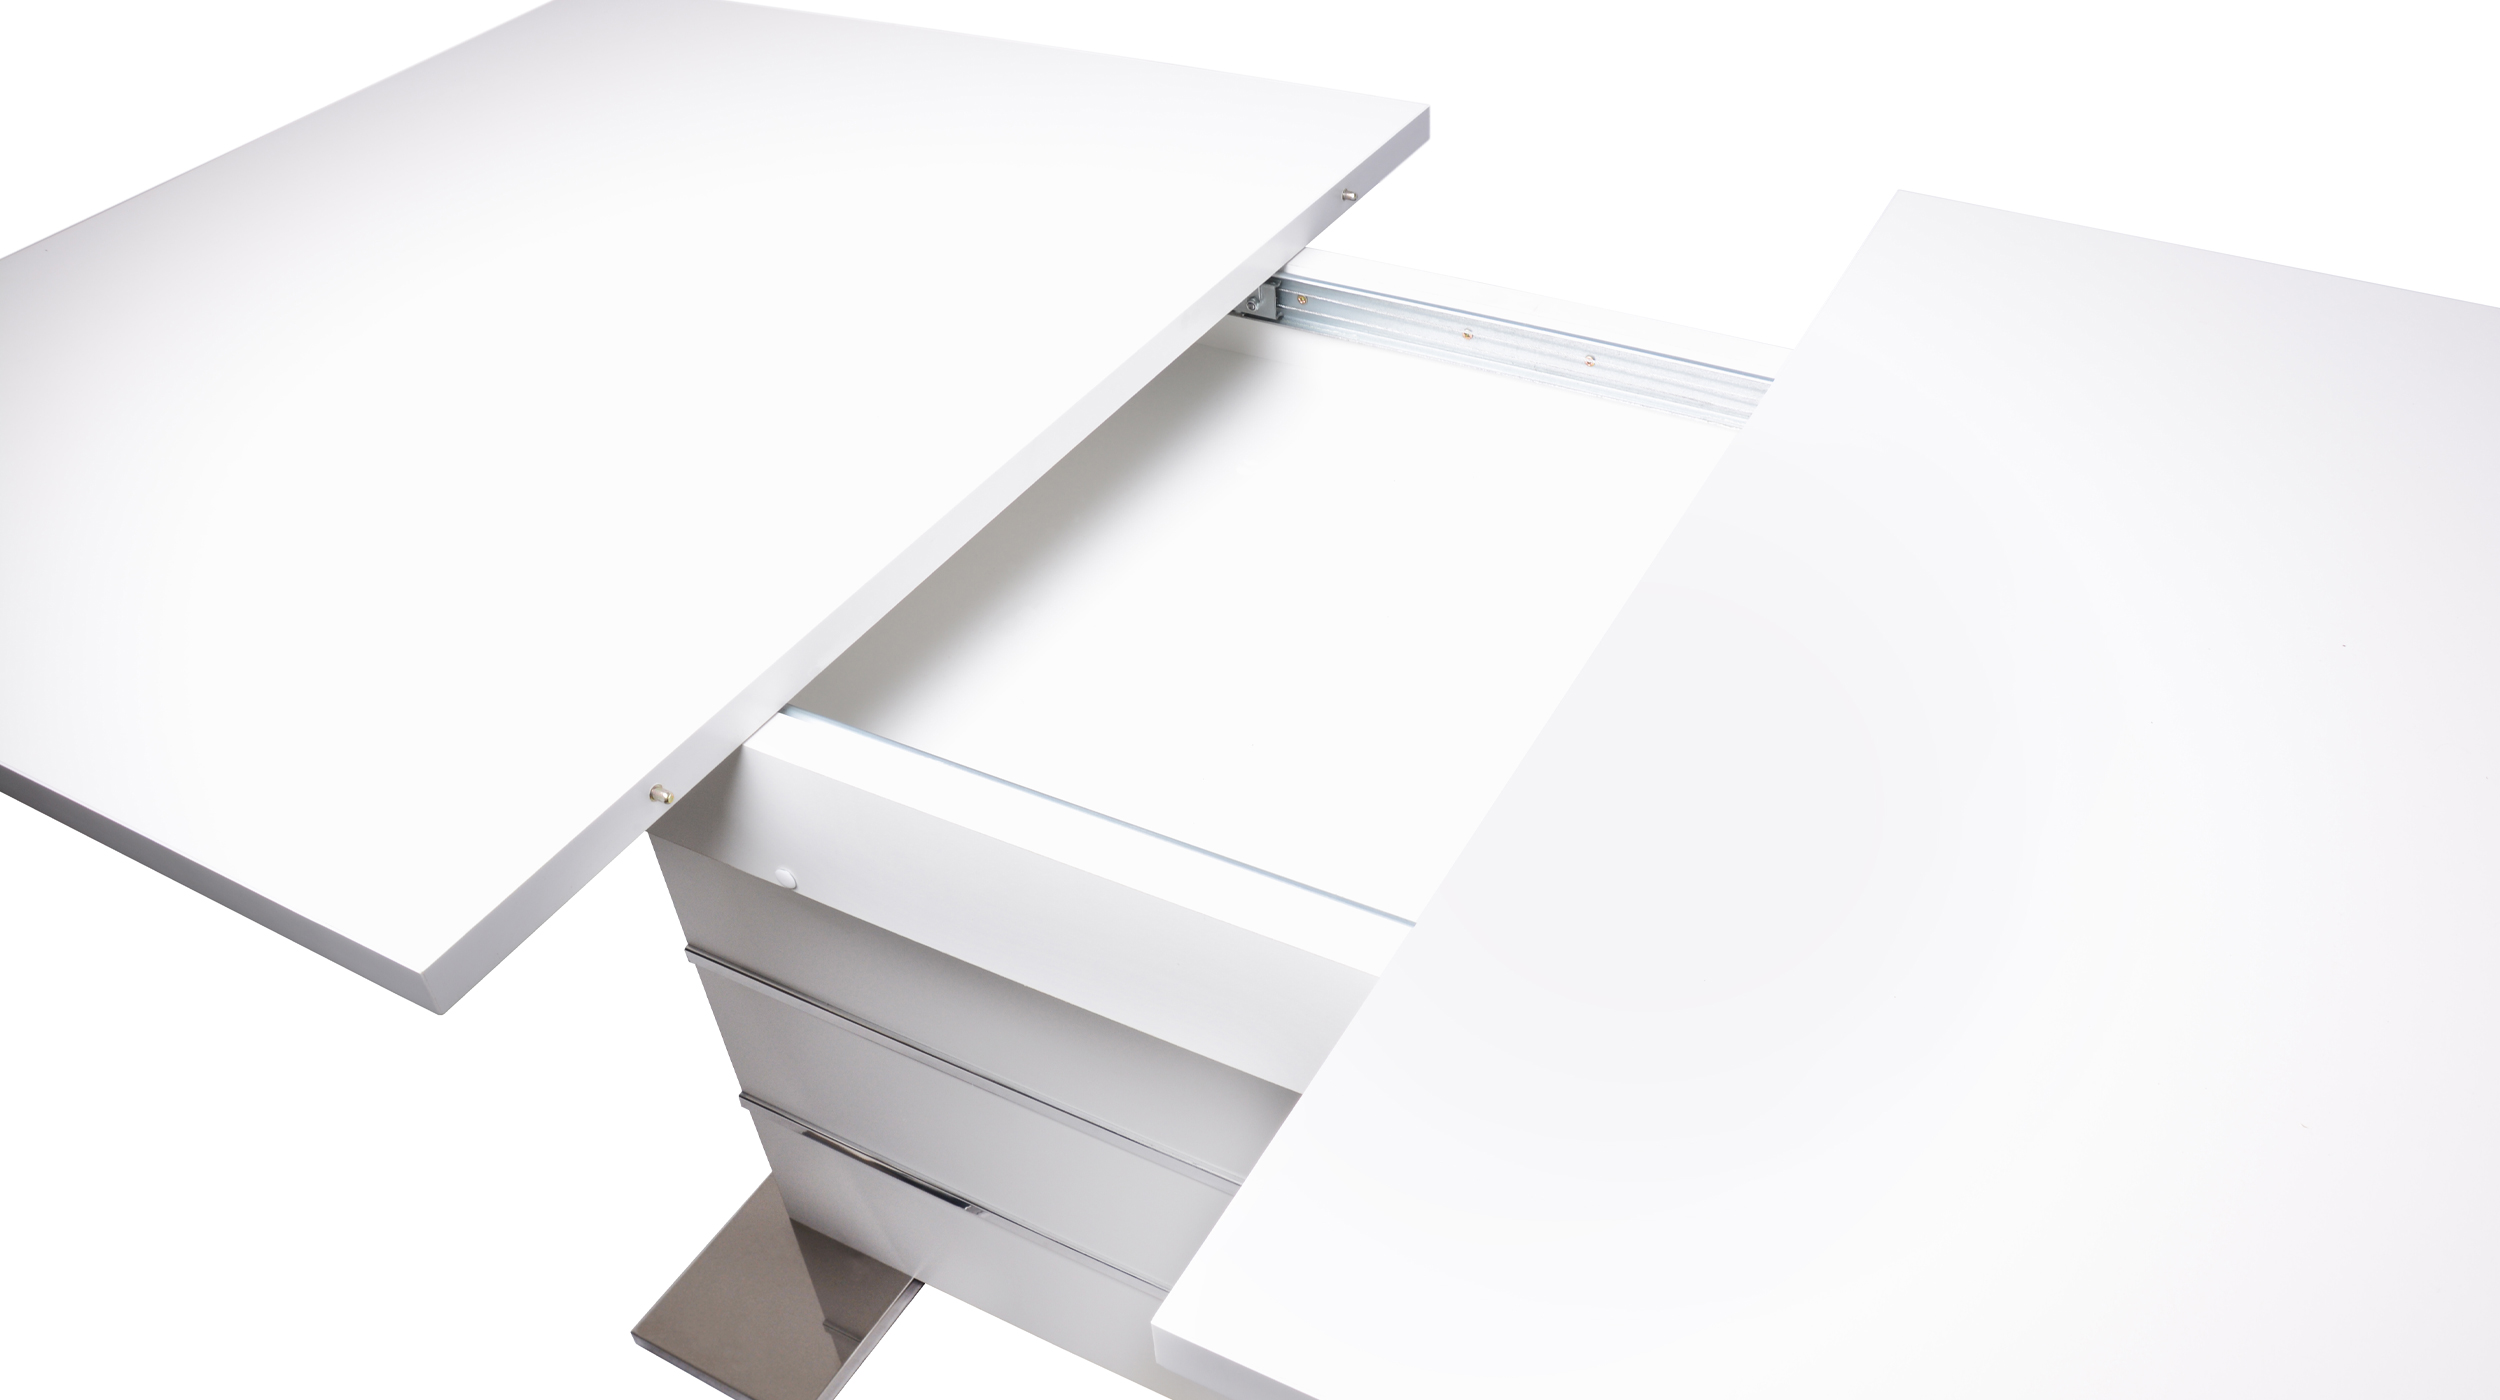 Säulentisch 160 - 200 cm weiß - ausziehbar - MANTOVA